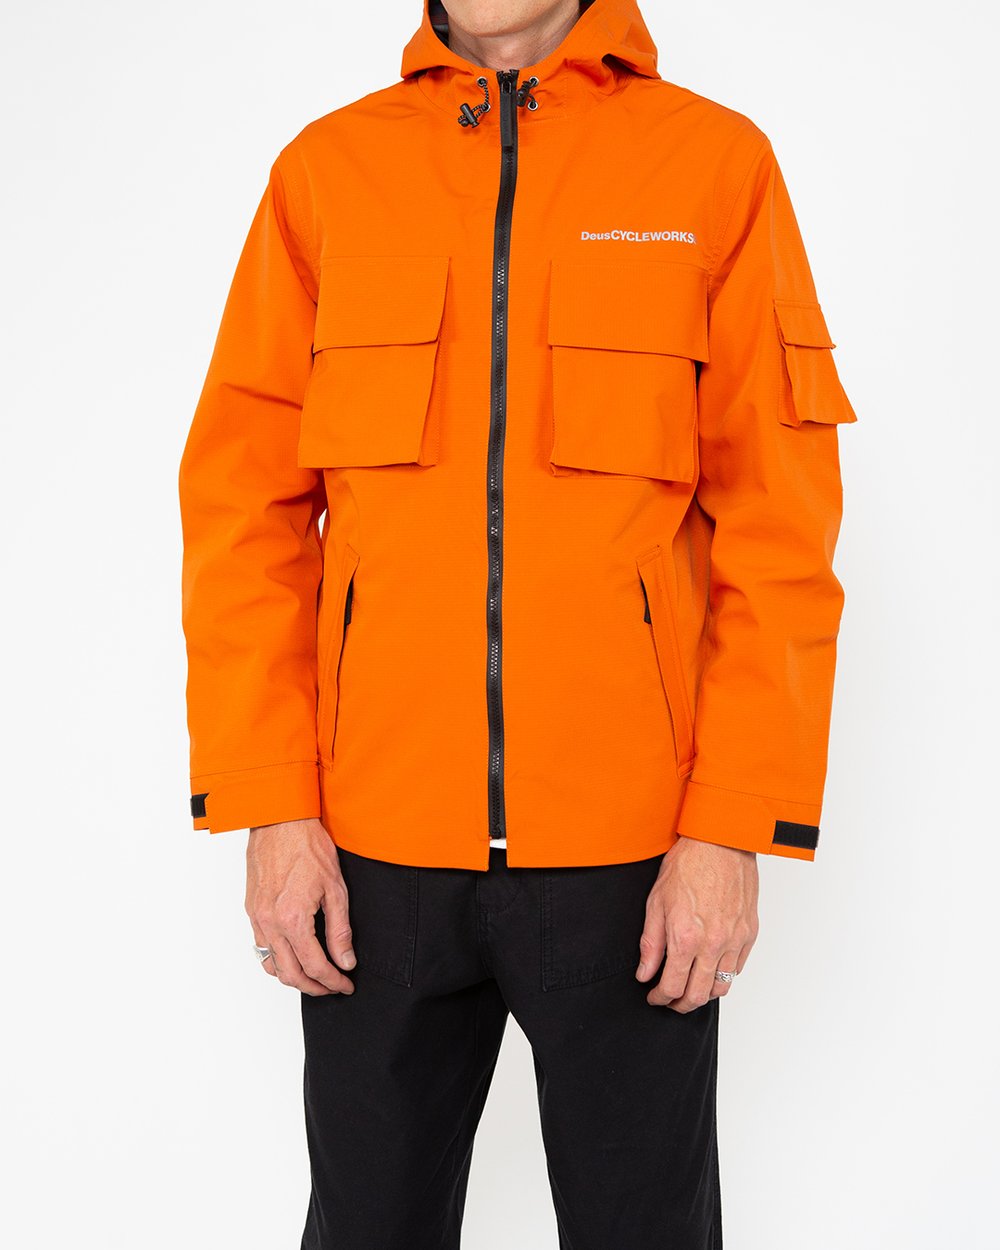 Performance Jacket Harvest Orange